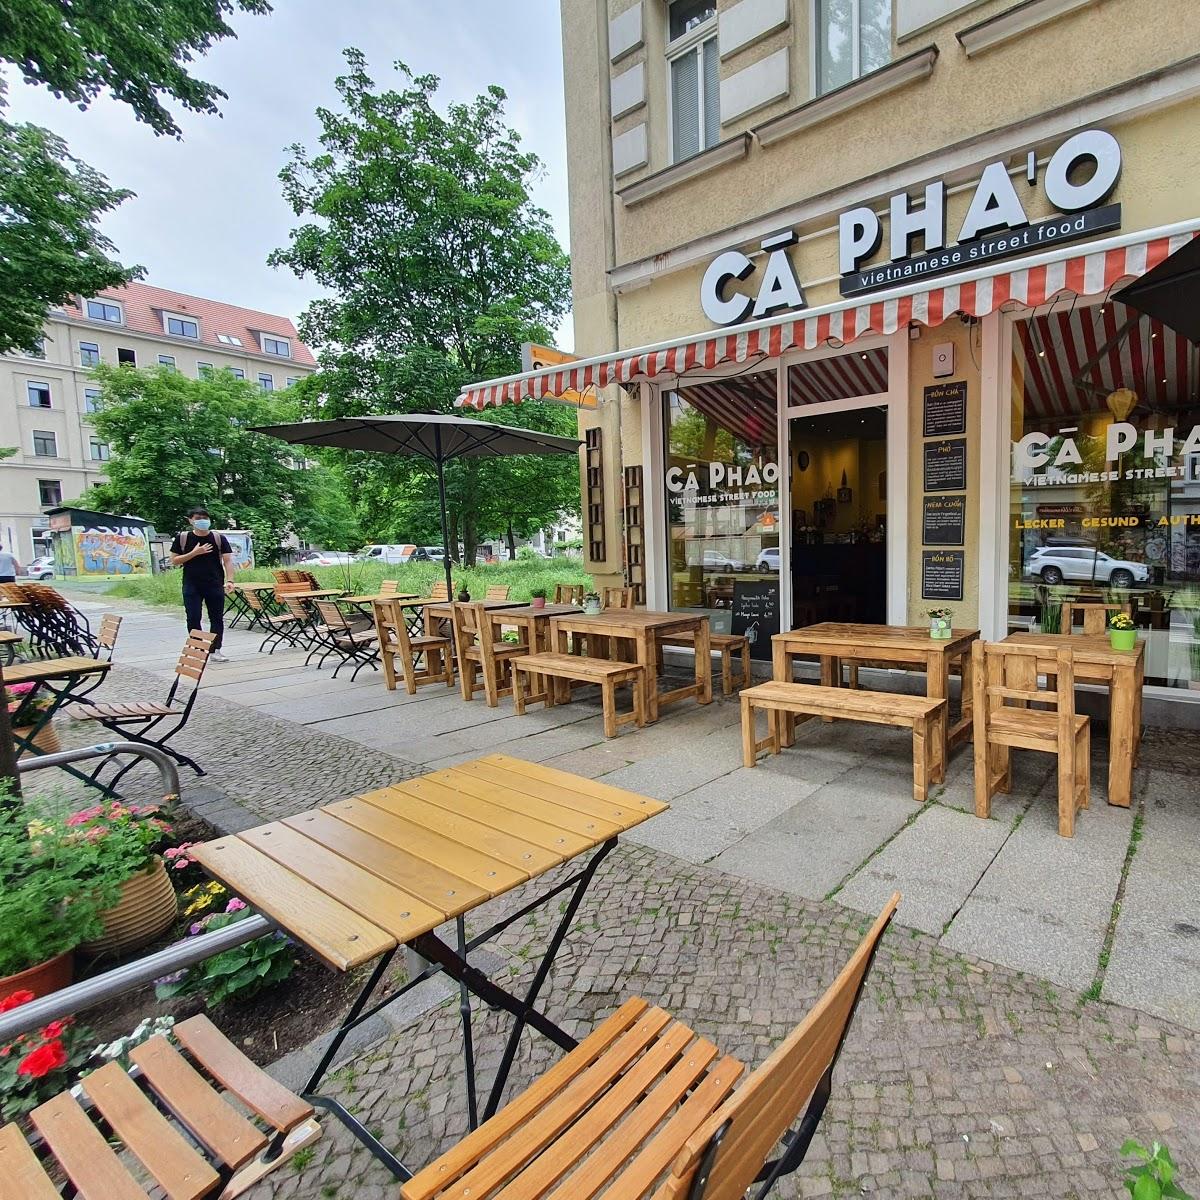 Restaurant "CÀ PHÁO" in Leipzig